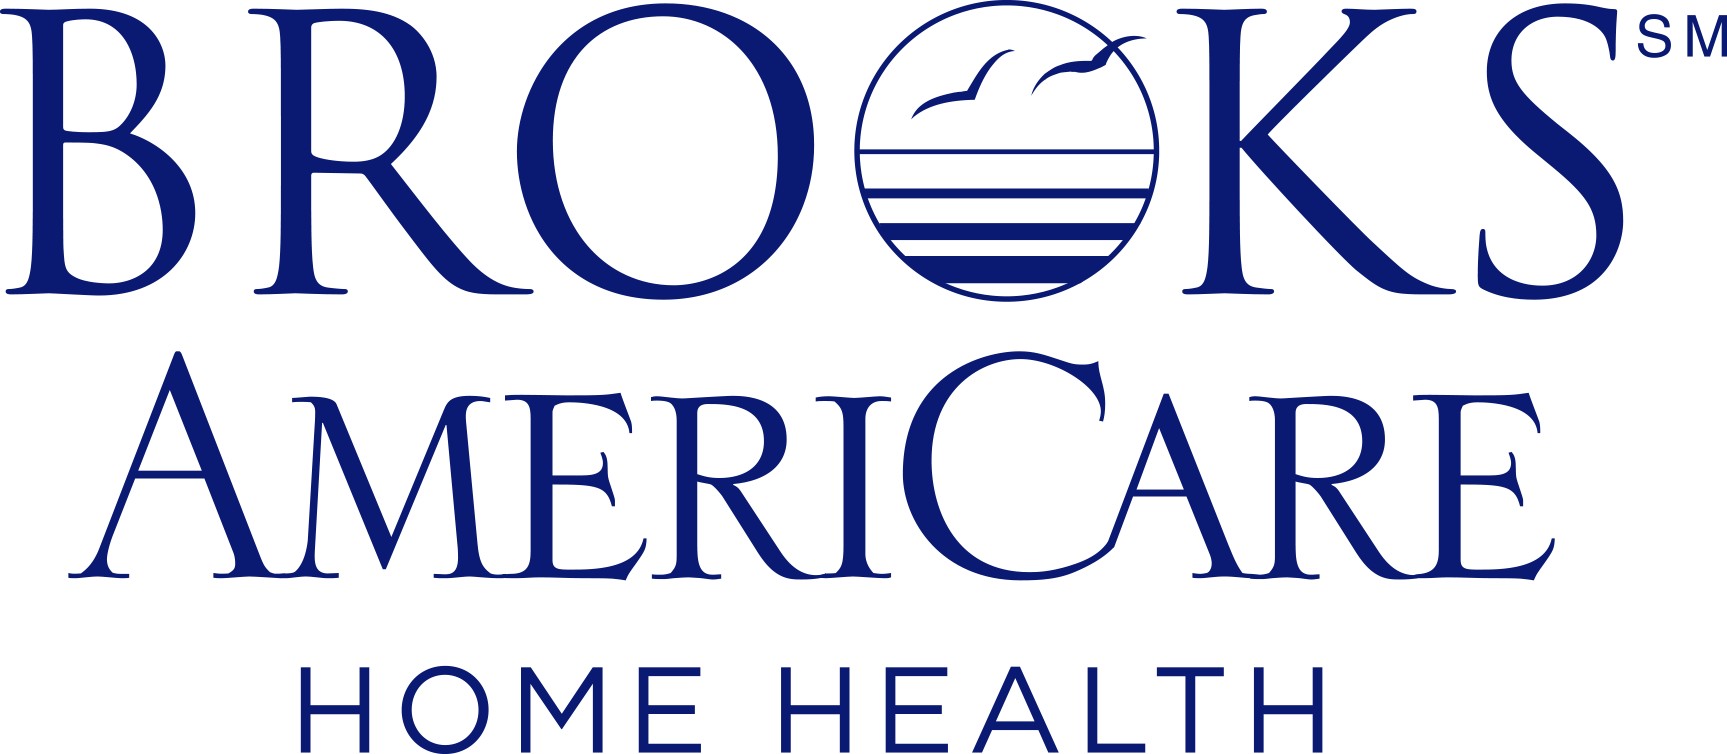 Brooks Americare Home Health | LinkedIn